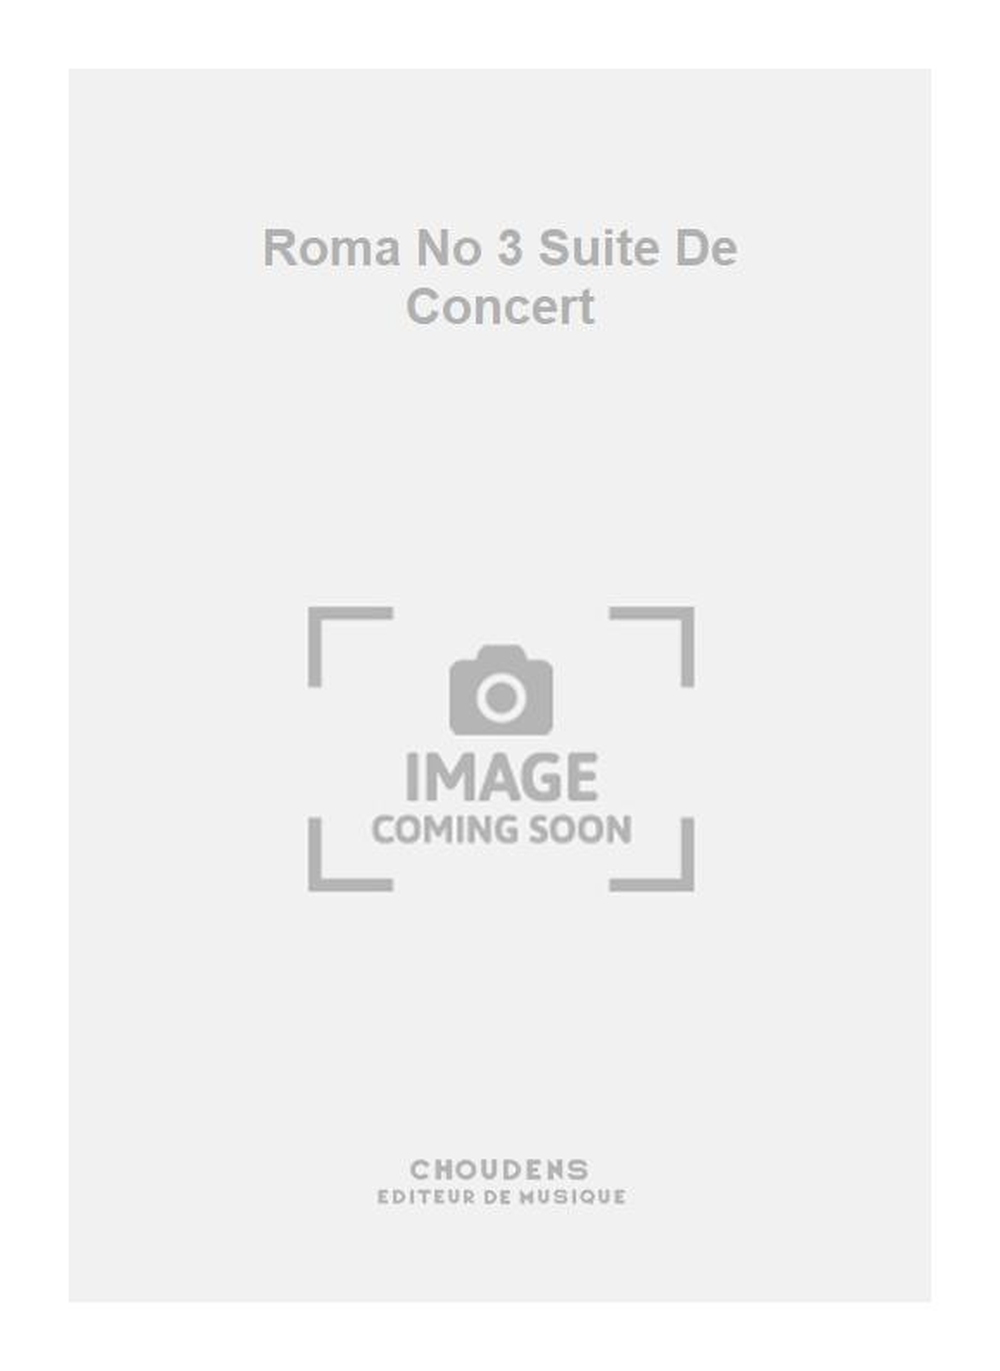 Georges Bizet: Roma No 3 Suite De Concert